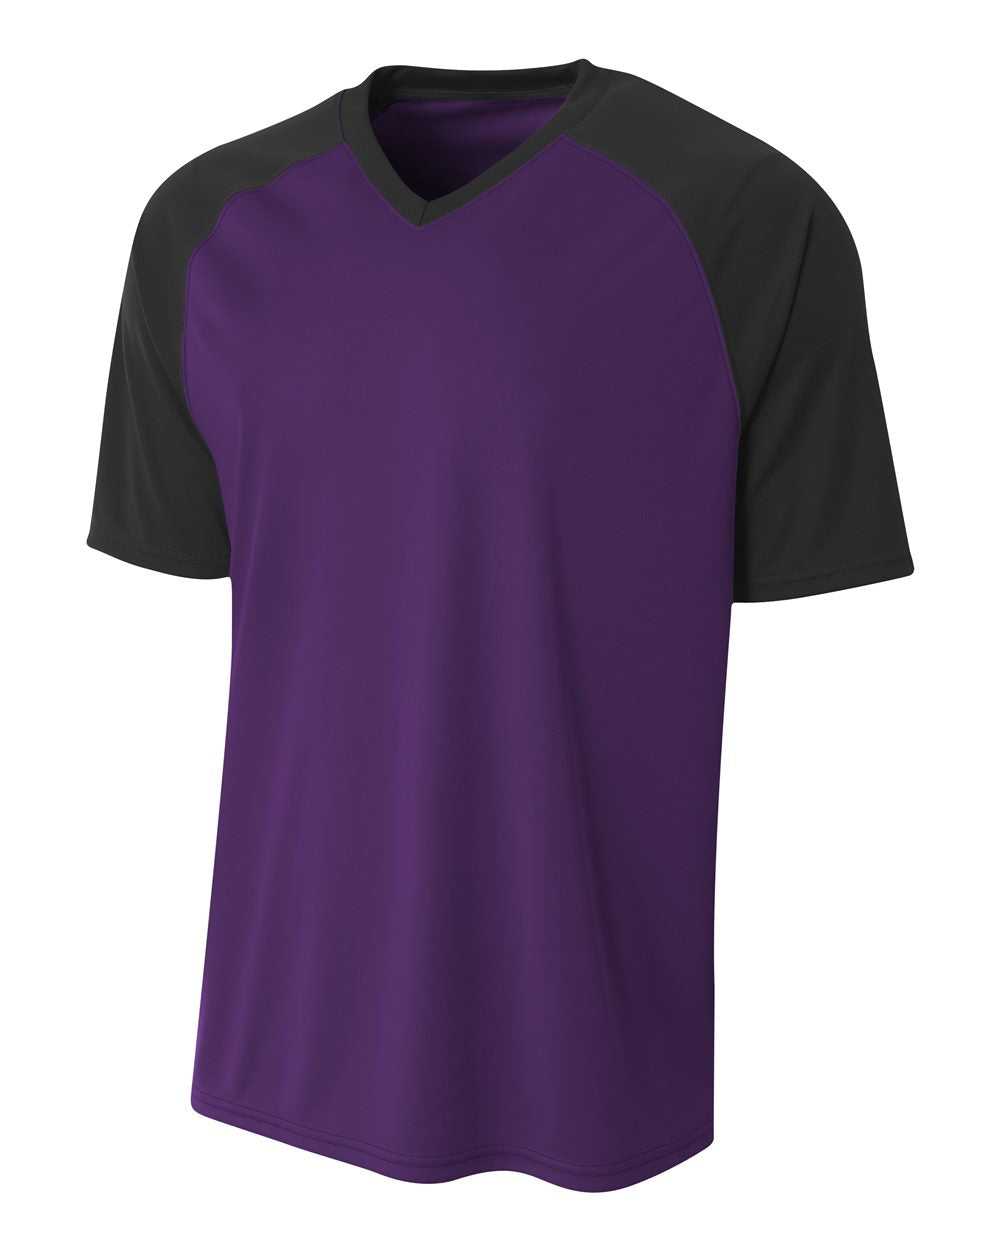 A4 N3373 Strike Jersey - Purple Black - HIT a Double